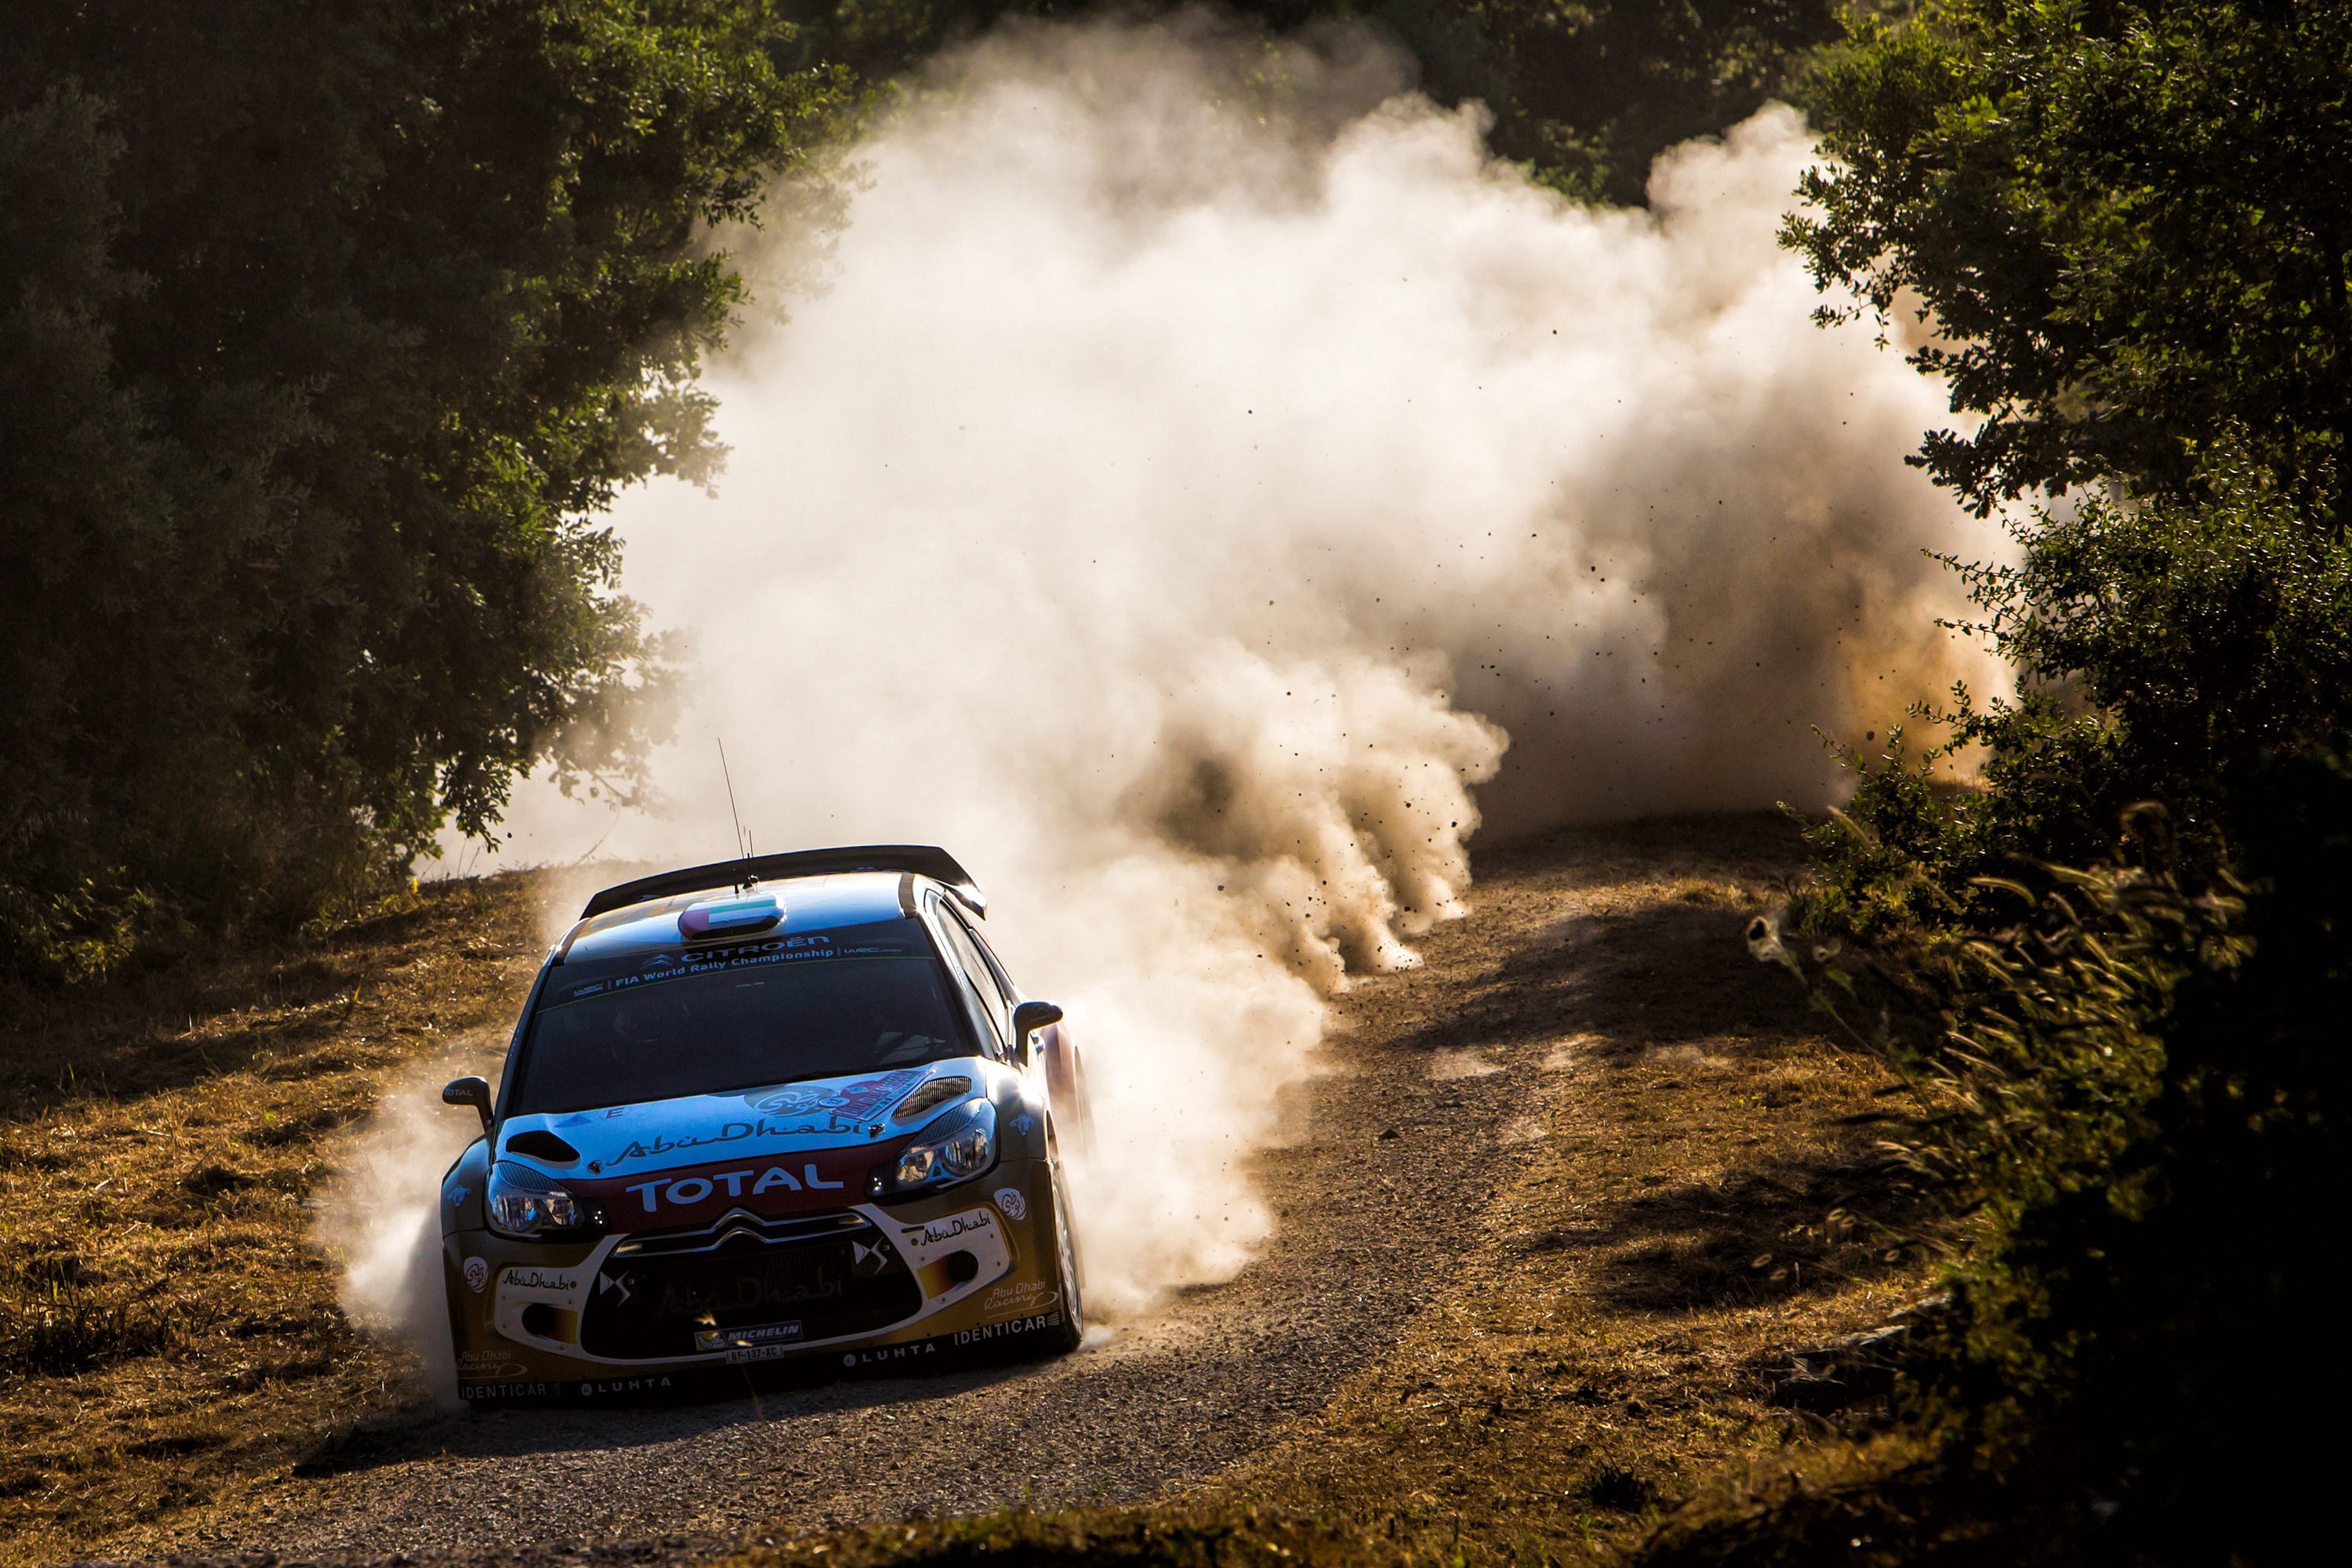 WRC: Η FIA απέρριψε τις προτάσεις για τις αλλαγές στο Παγκόσμιο Πρωτάθλημα Ράλλυ